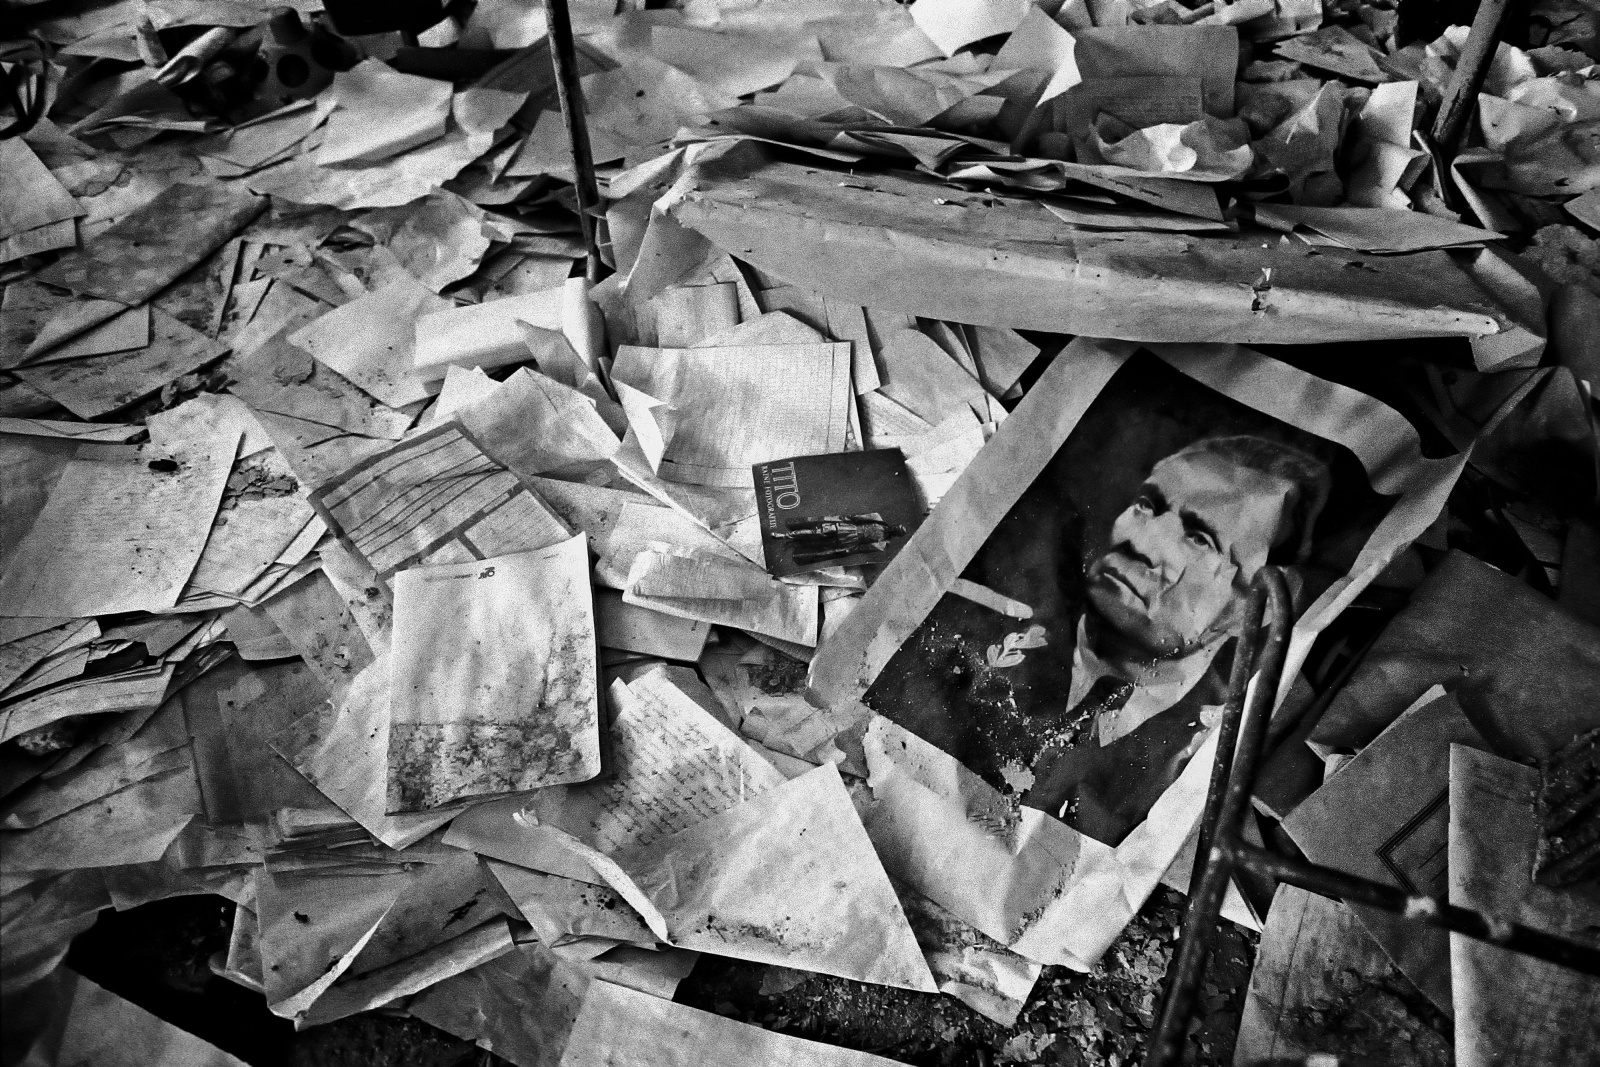 Sarajevo 1993. Una fotografia del Maresciallo Tito, padre della Jugoslavia capitolata all’inizio degli Anni 90, tra le macerie di una scuola elementare distrutta dalle bombe dei serbi. 